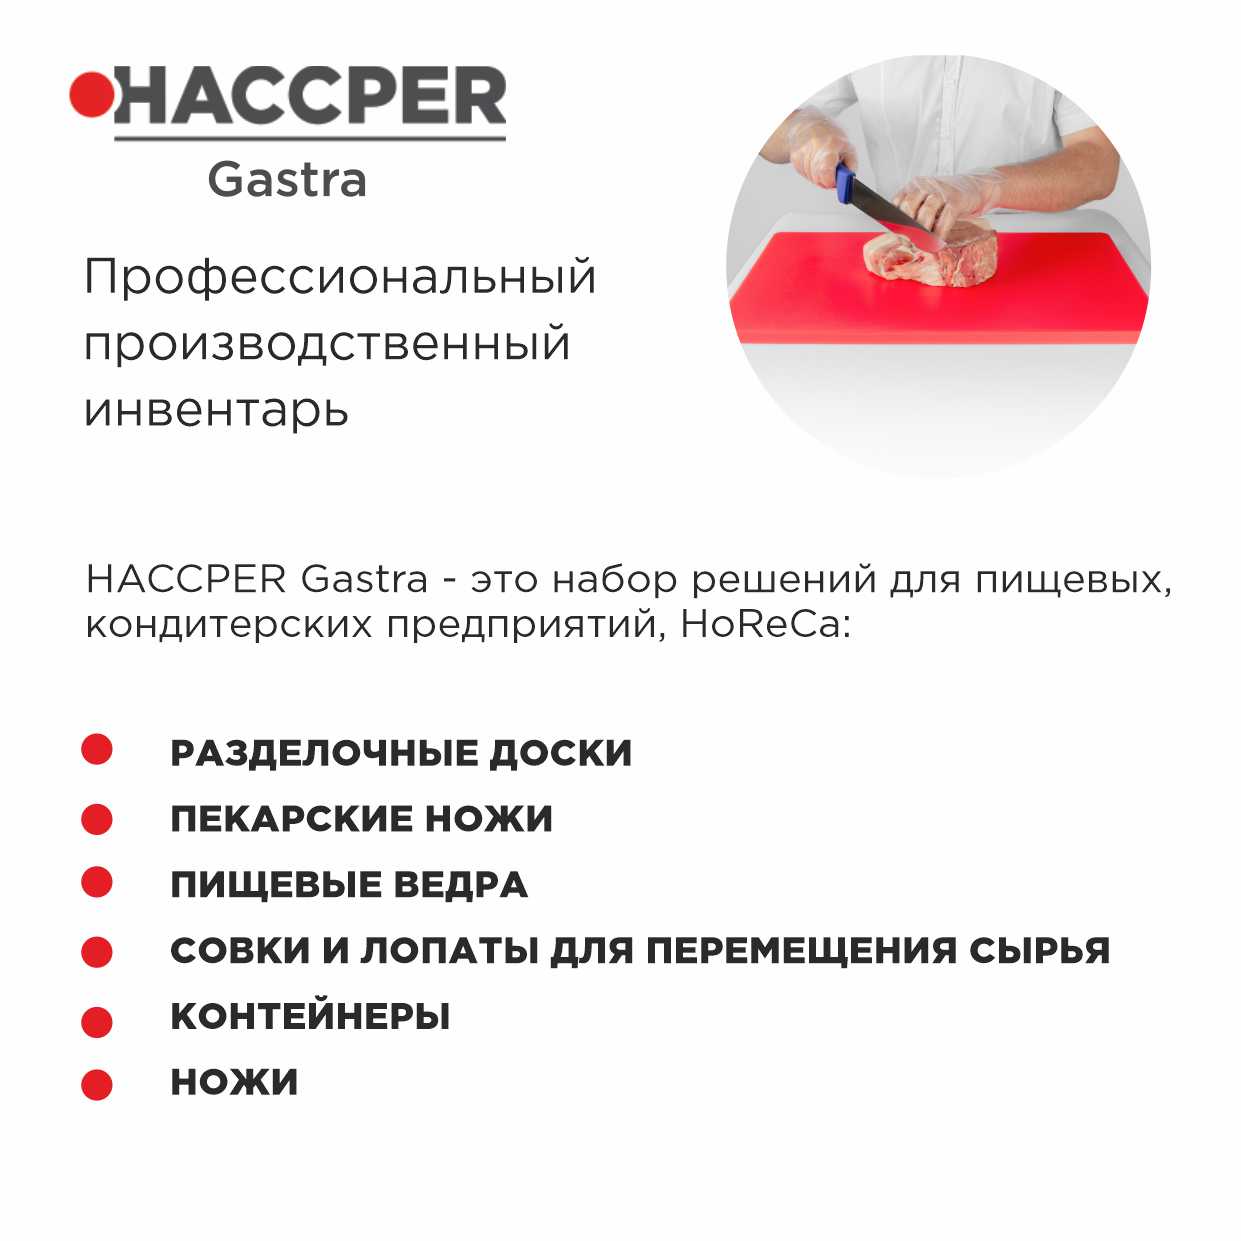 Профессиональная разделочная доска  HACCPER Gastra, белая